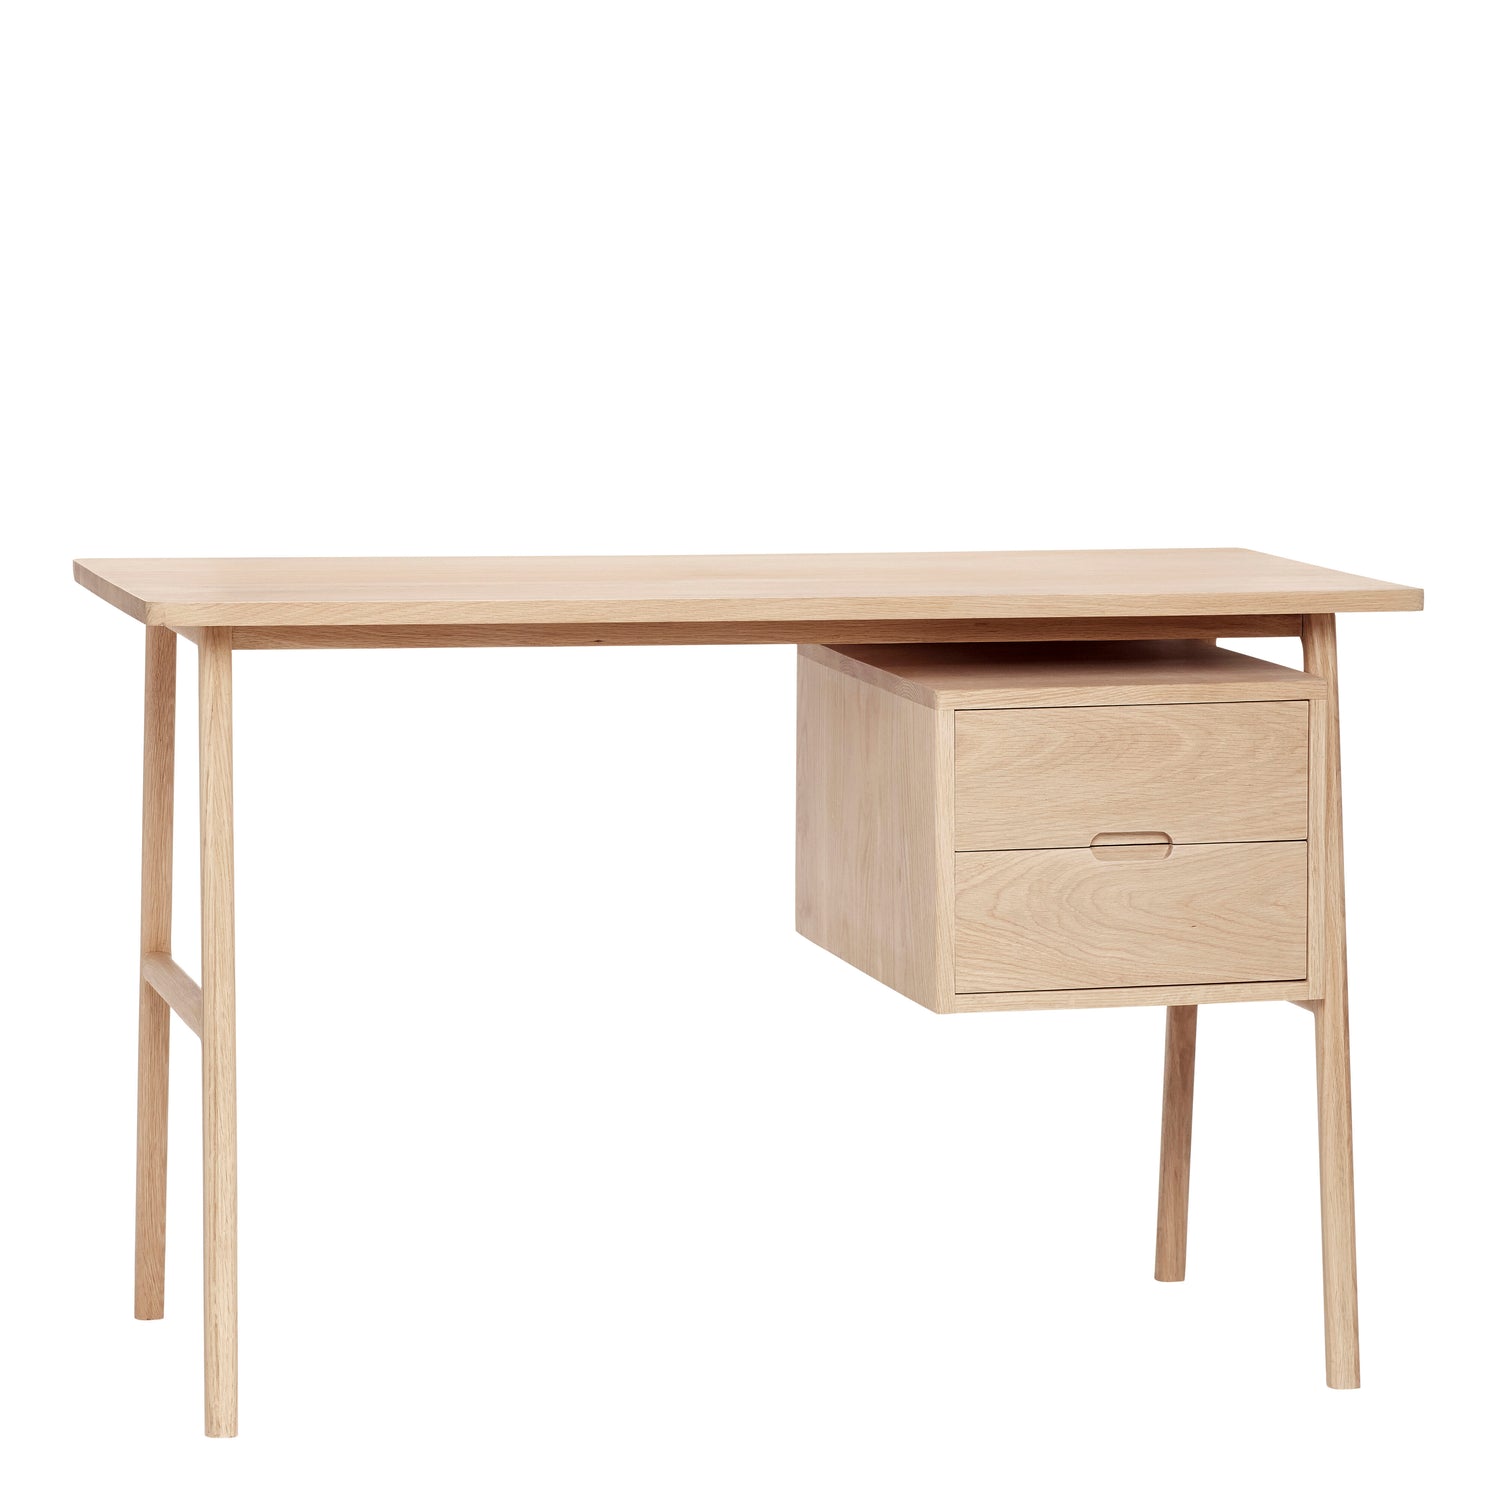 Hübsch - Desk com gavetas, carvalho, fsc, natureza - 120x57xh75cm